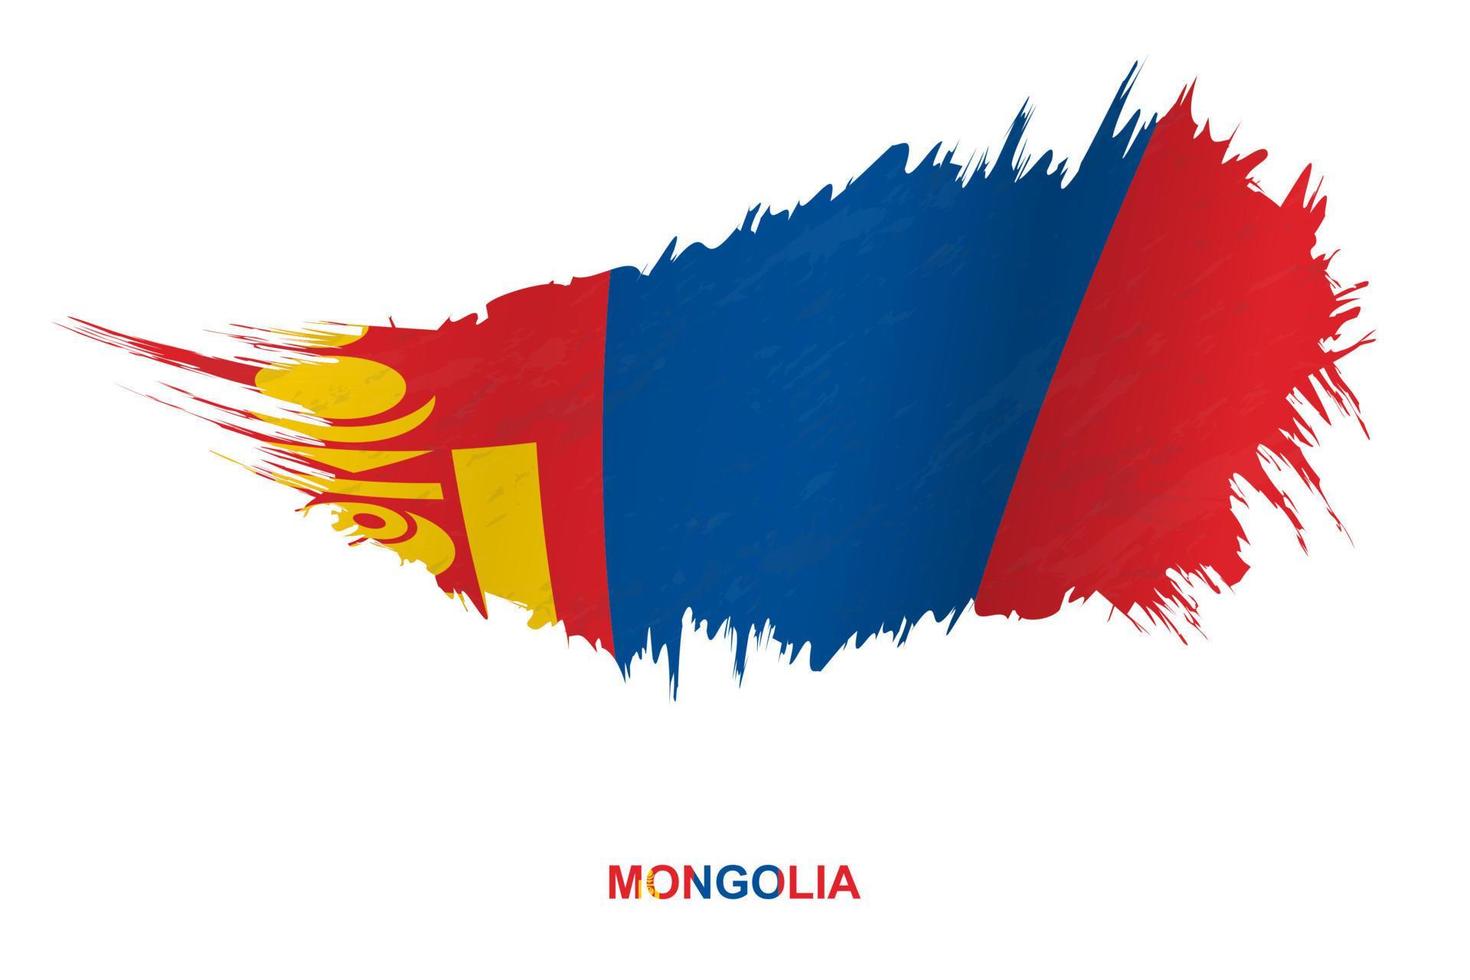 bandeira da mongólia em estilo grunge com efeito acenando. vetor